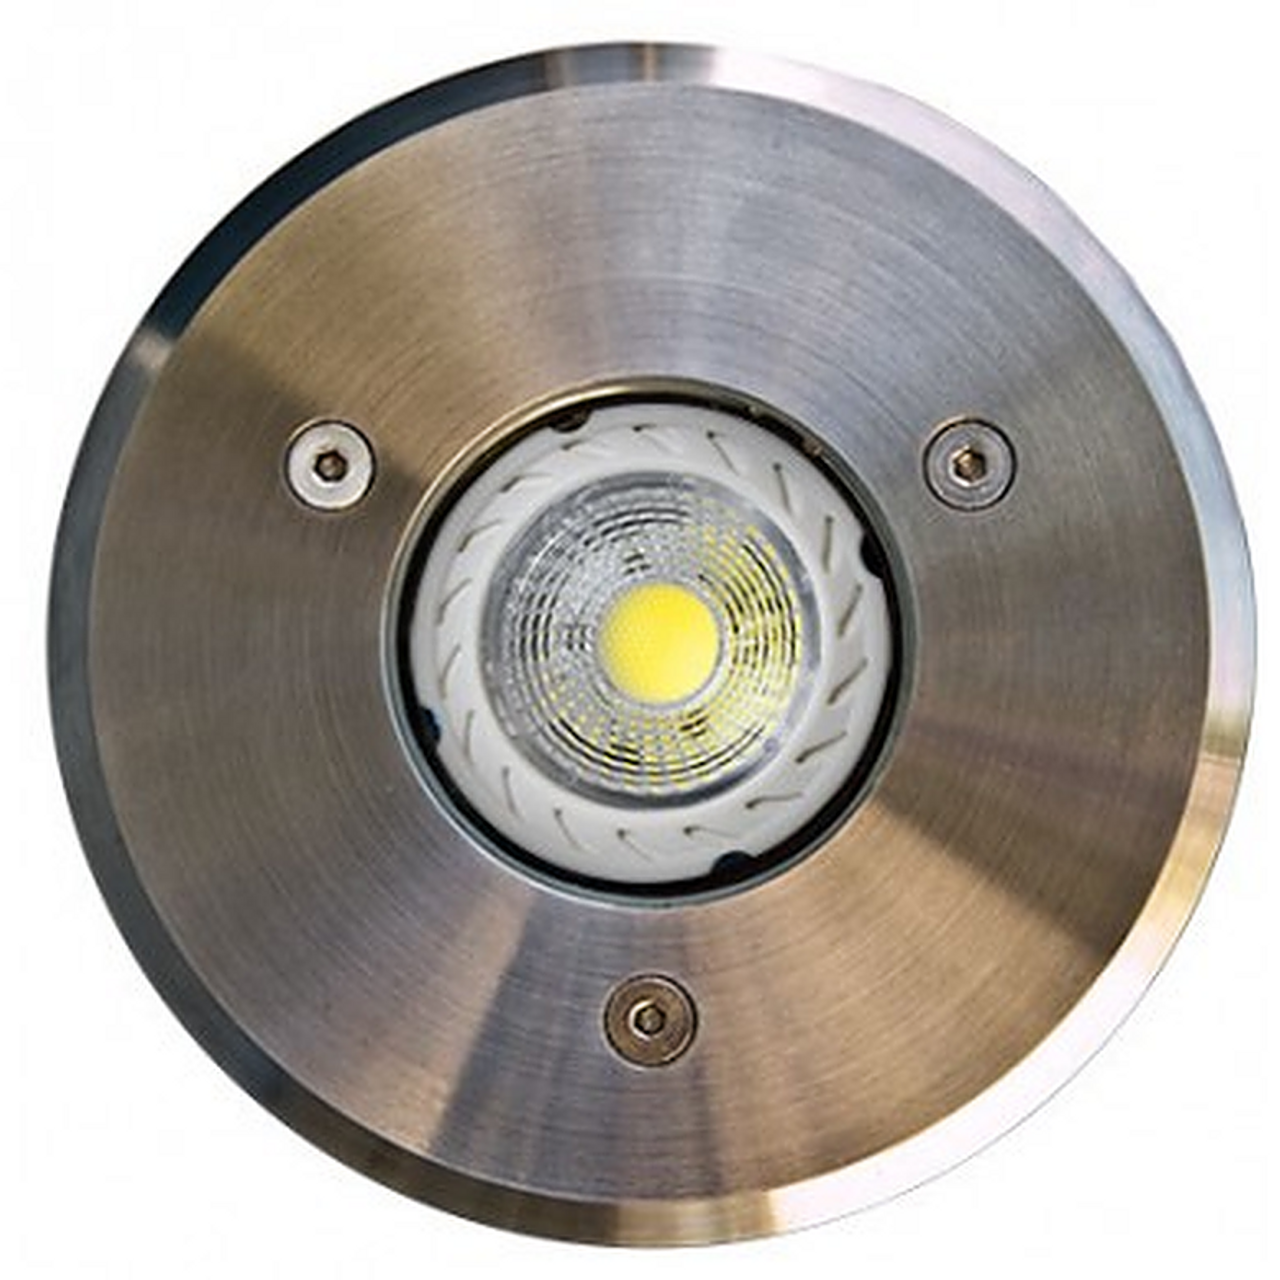 DABMAR LIGHTING LV311-LED3 Stainless Steel LED In-Ground Well Light, Stainless Steel